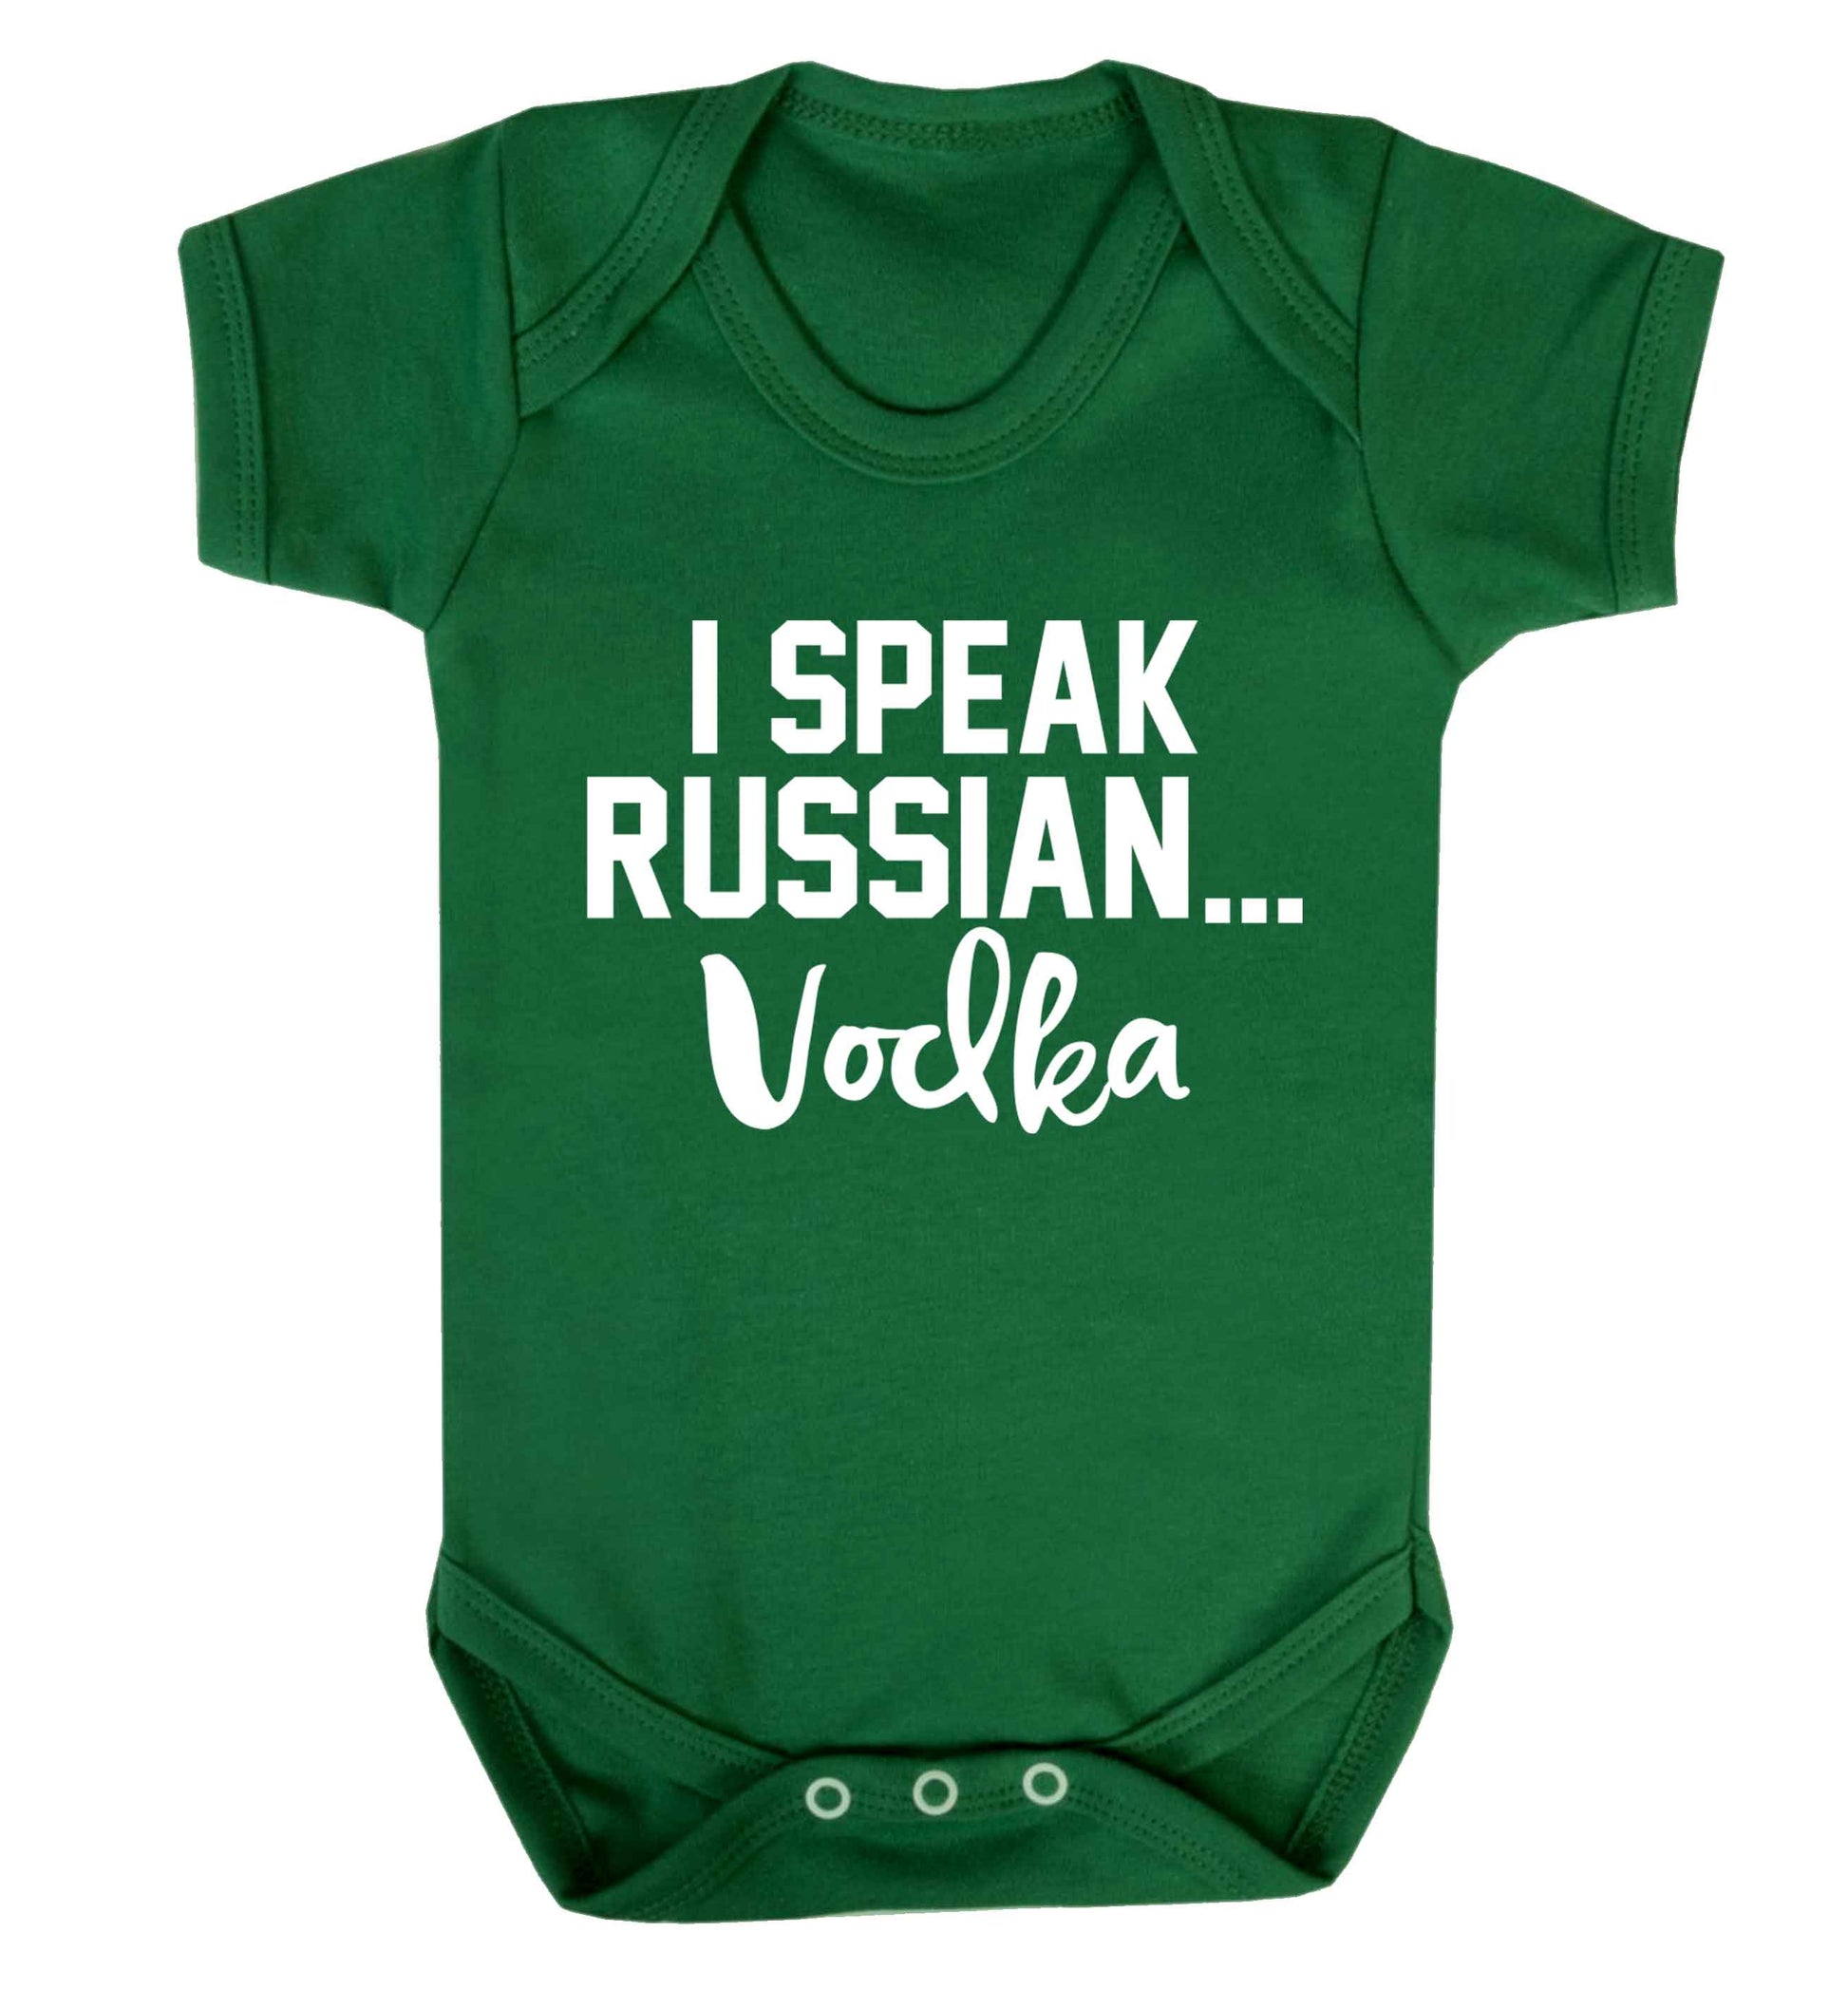 I speak russian...vodka Baby Vest green 18-24 months